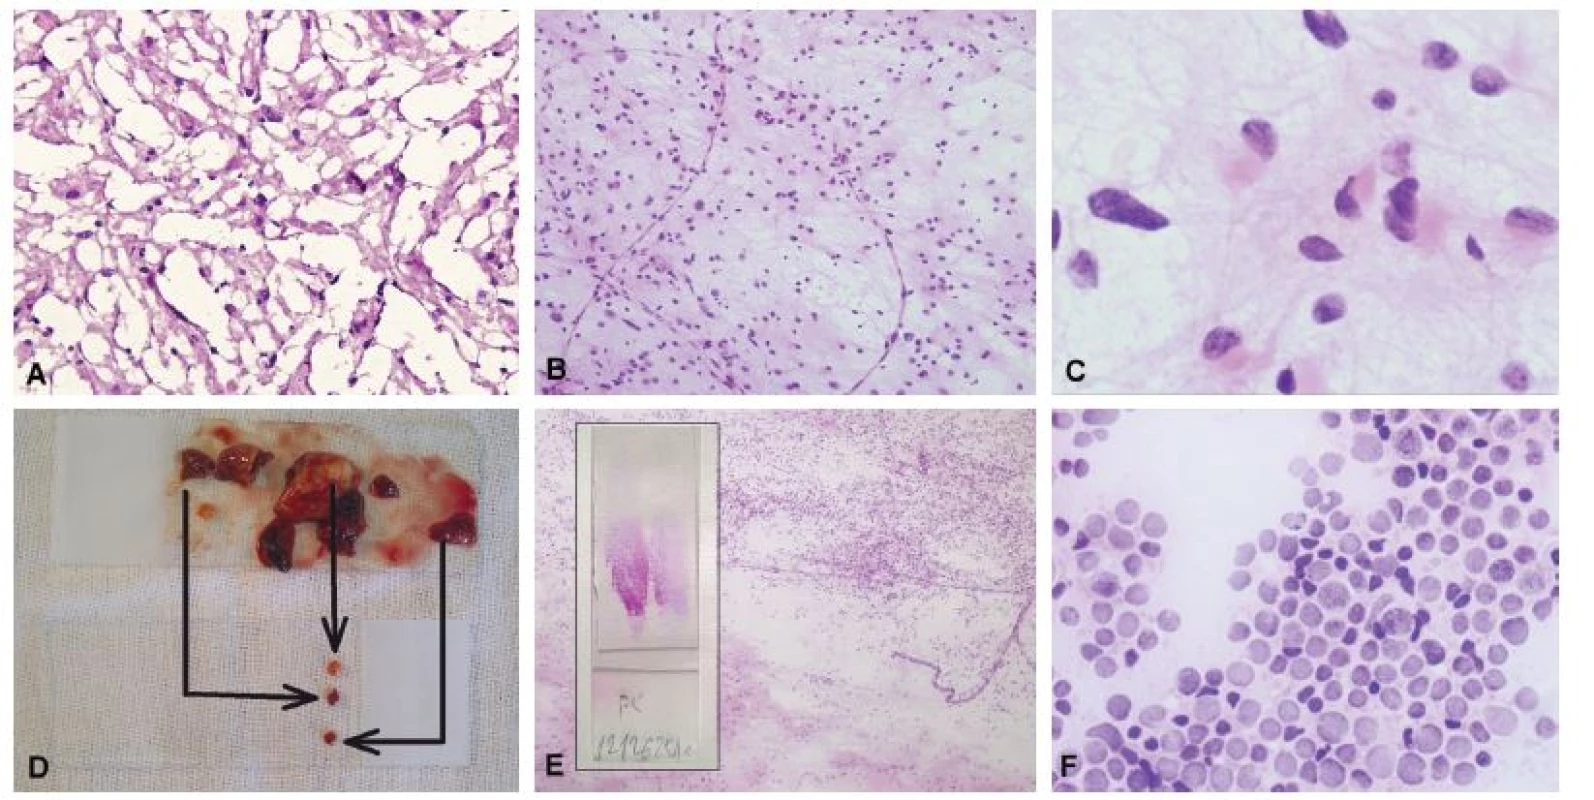 A) Biopsia tumoru frontálneho laloka u 31-ročného muža. Zmrazením tkaniva došlo k vzniku kryštálikov ľadu a potrhaniu tkaniva. Aj keď sú nepravidelné
a hyperchromatické jadrá sugestívne pre diagnózu gliómu, architektoniku nemožno spoľahlivo hodnotiť. (B) Gliálne lézie sa v náterovej cytológii prezentejú
skupinami buniek, ktoré sú vzájomne spojené eozinofilnými gliálnymi výbežkami. (C) Detailný pohľad na nádorové bunky potvrdil prítomnosť eozinofilnej
cytoplazmy s gliálnymi výbežkami, jadrovú hyperchromáziu a pleomorfiu. Peroperačná diagnóza: low-grade primárny (astrocytárny) novotvar. Definitívna
diagnóza: difúzny astrocytóm, grade II. (D) Pomocou náterovej cytológie je možné vyšetriť rôzne časti materiálu na jednom skle. (E) Náter zhotovený z dvoch
rôznych častí materiálu (vložený obrázok) ukázal prítomnosť nádoru – oligodendrogliómu (horná časť obrázku) a normálneho tkaniva mozgu (dolná časť
obrázku). Možnosť porovnania nenádorovej a nádorovej populácie výrazne uľahčuje diagnózu. (F) Cytolyticky zmenené bunky difúzneho veľkobunkového
B-lymfómu. Reprezentatívnejšie (menej cytotolyzované) bunky boli prítomné v inej časti náteru. Na optimálne zachovanie cytologických detailov je nevyhnutná
okamžitá fixácia.